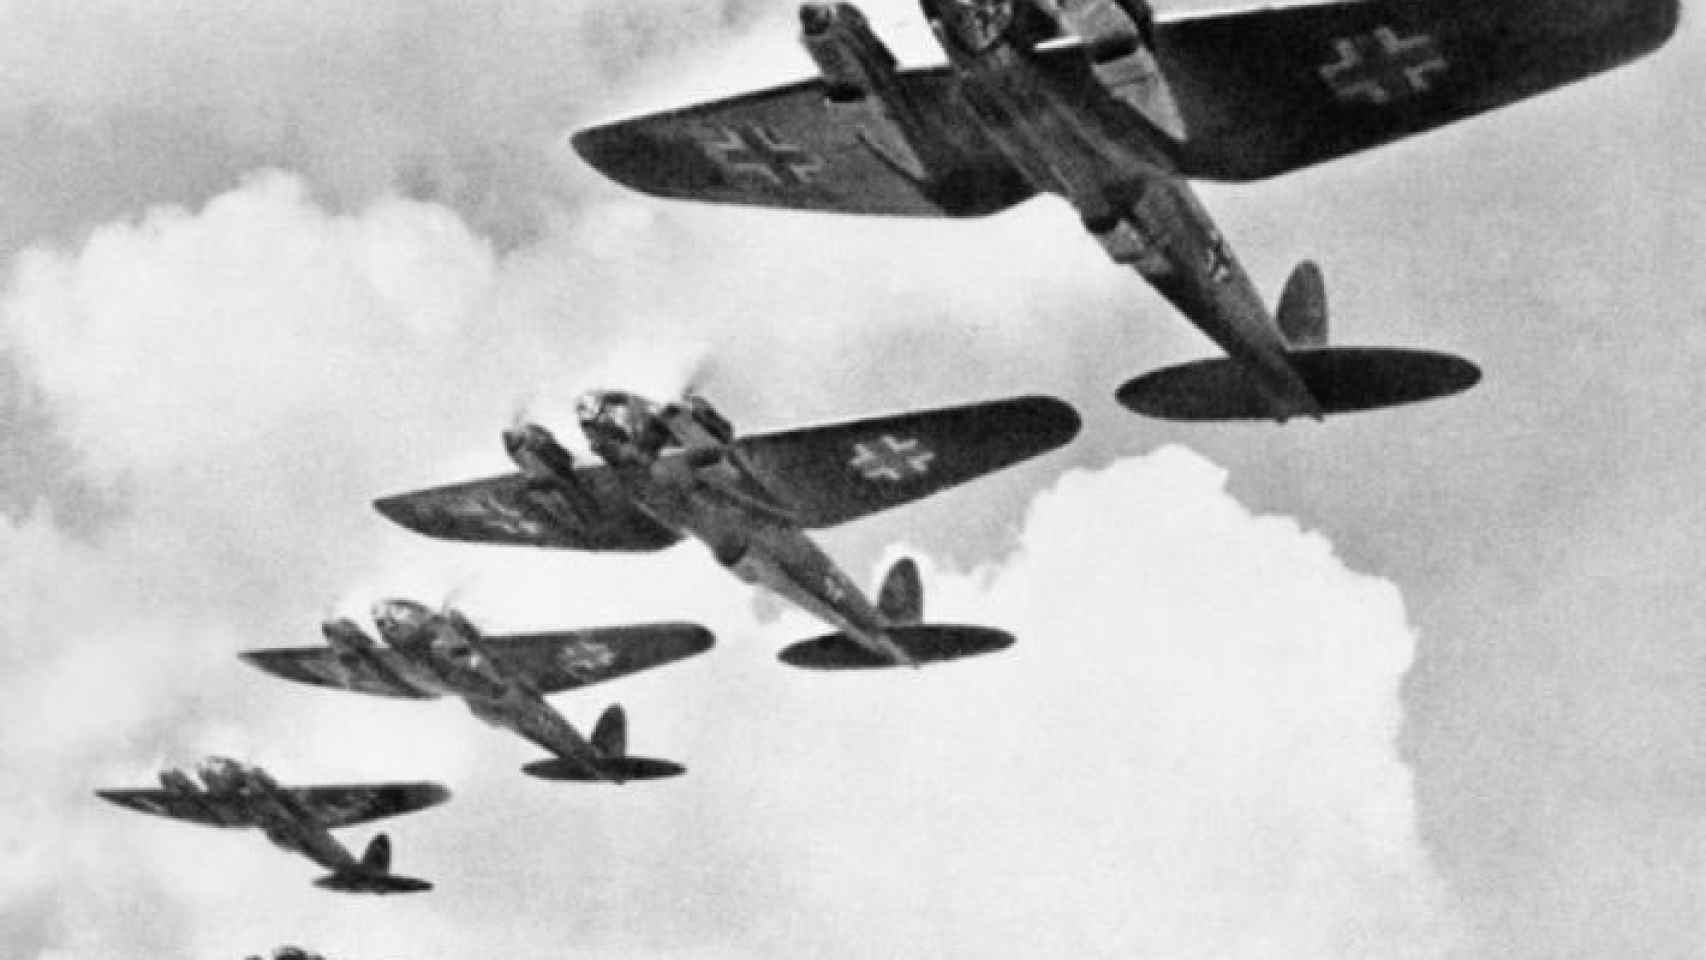 Formación de aviones alemanes Heinkel He 111 sobre en el cielo de Inglaterra